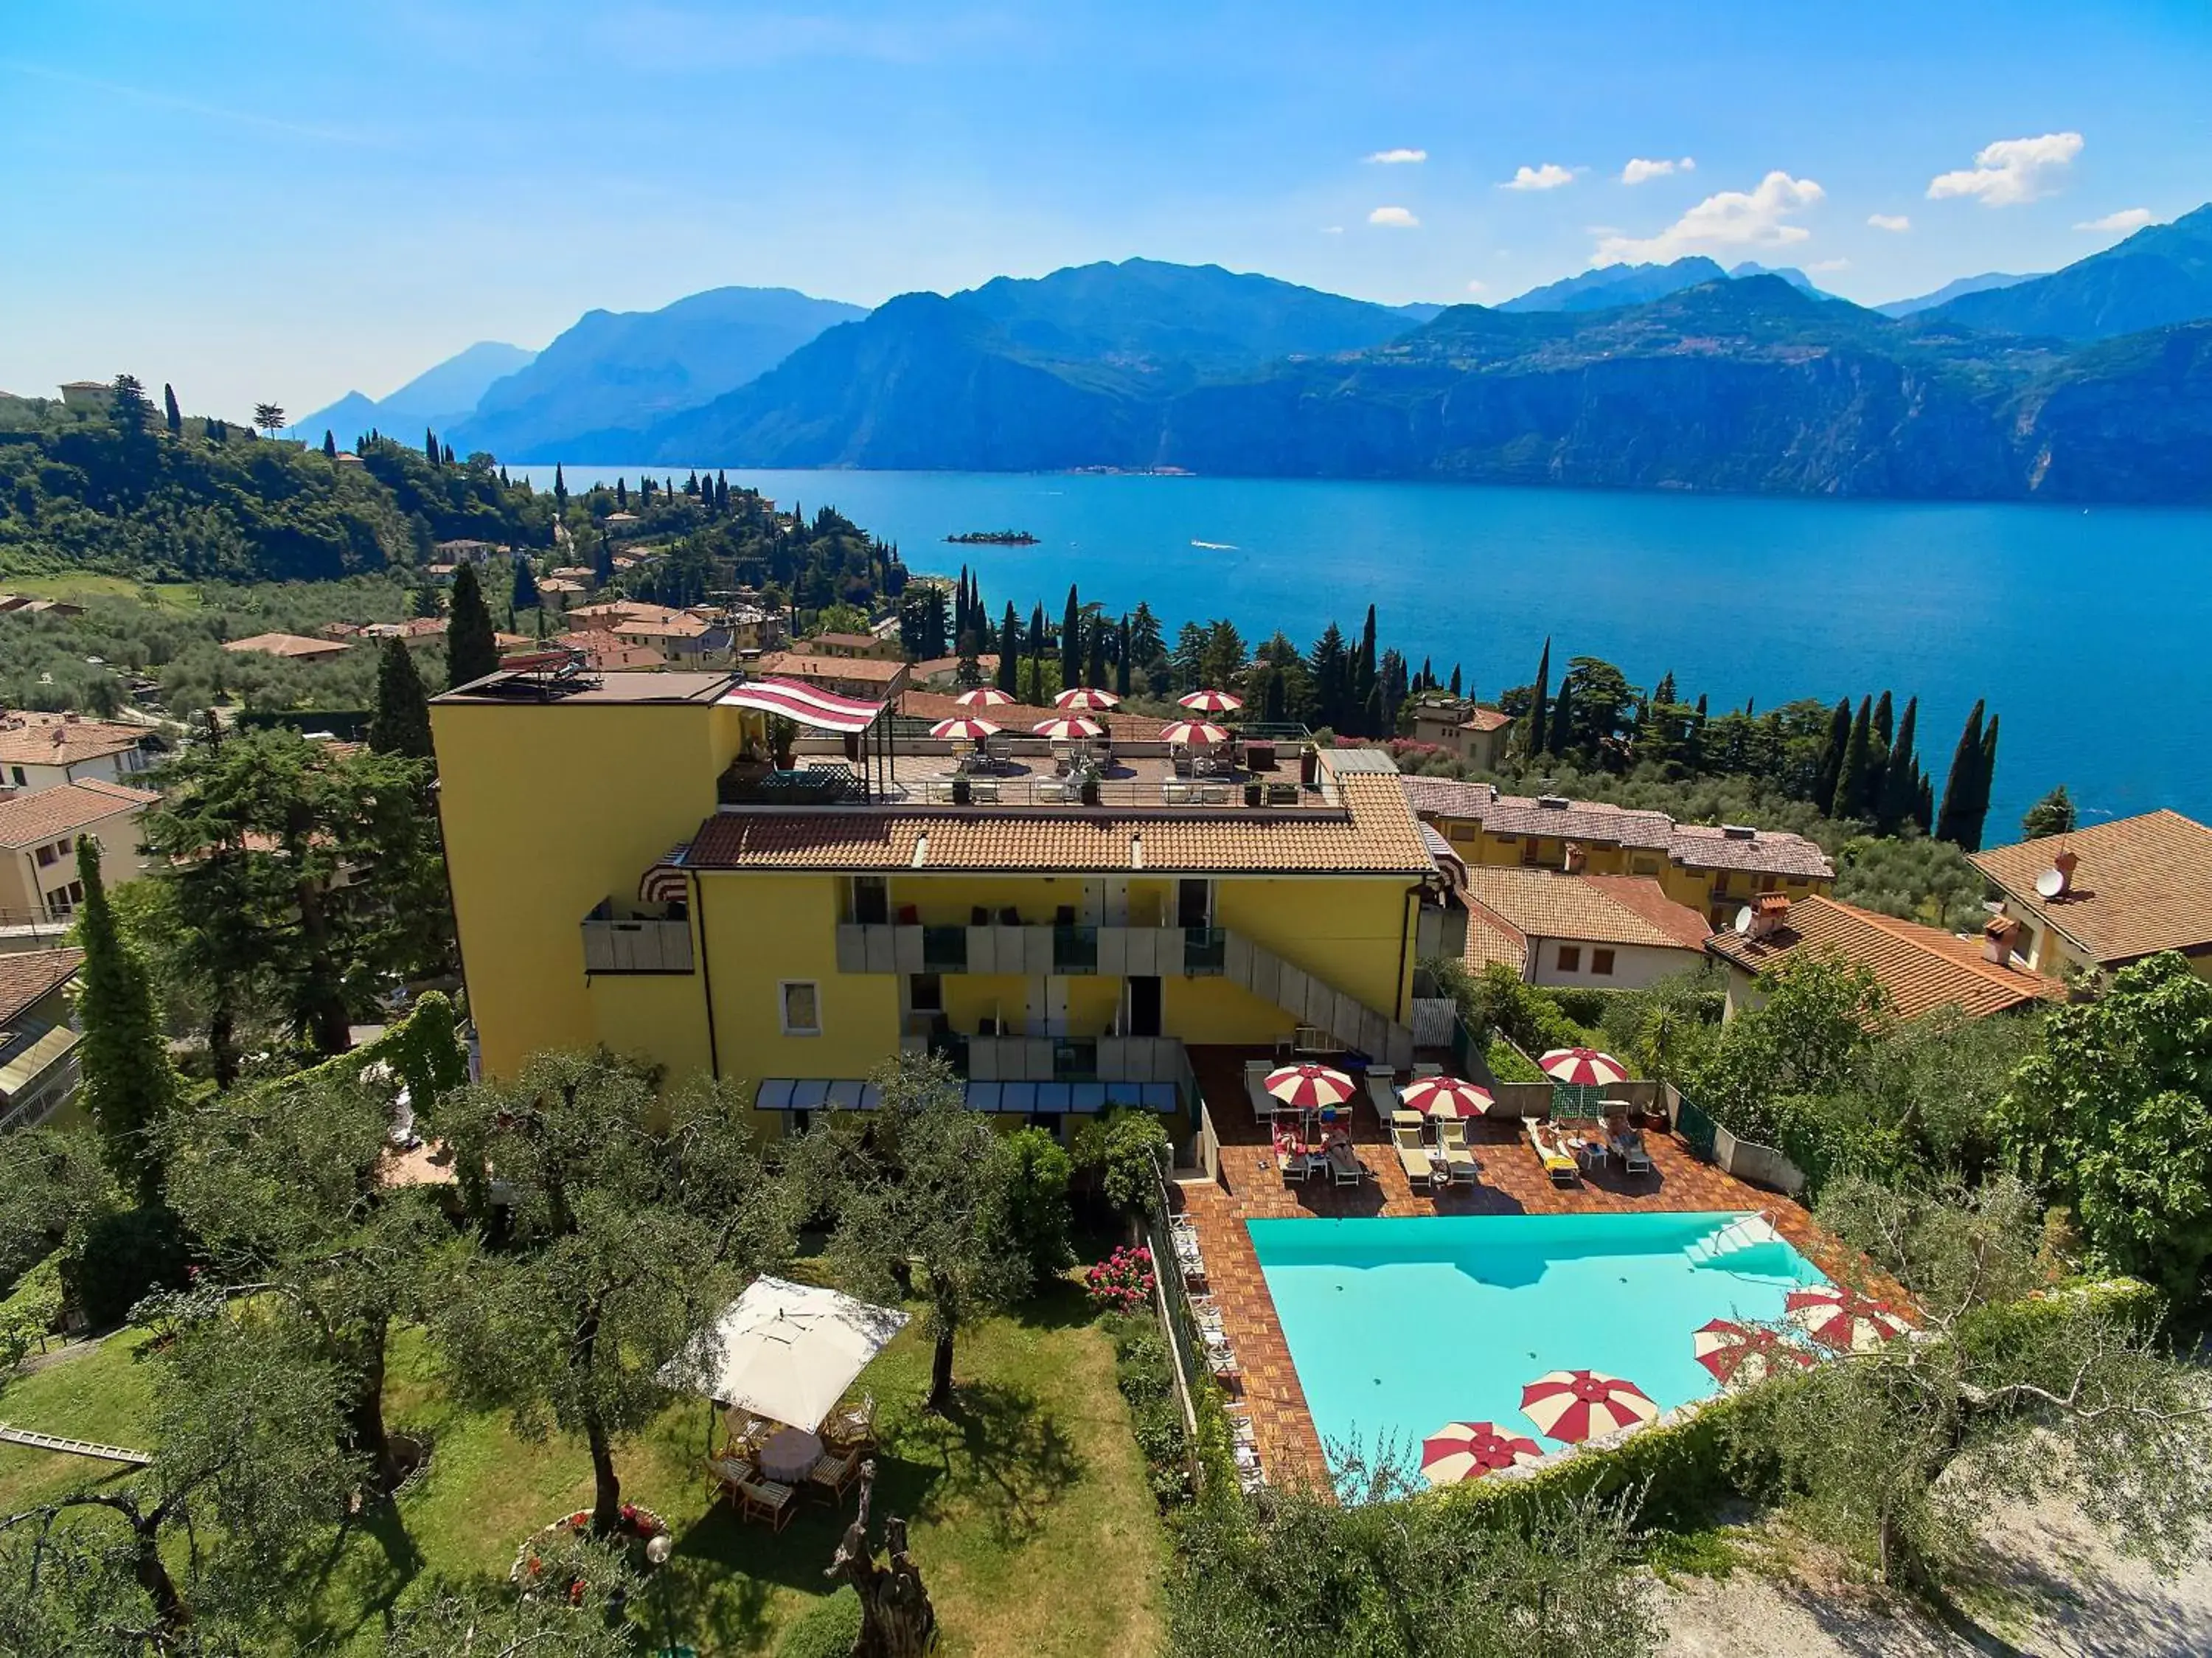 Other, Bird's-eye View in Hotel Villa Smeralda